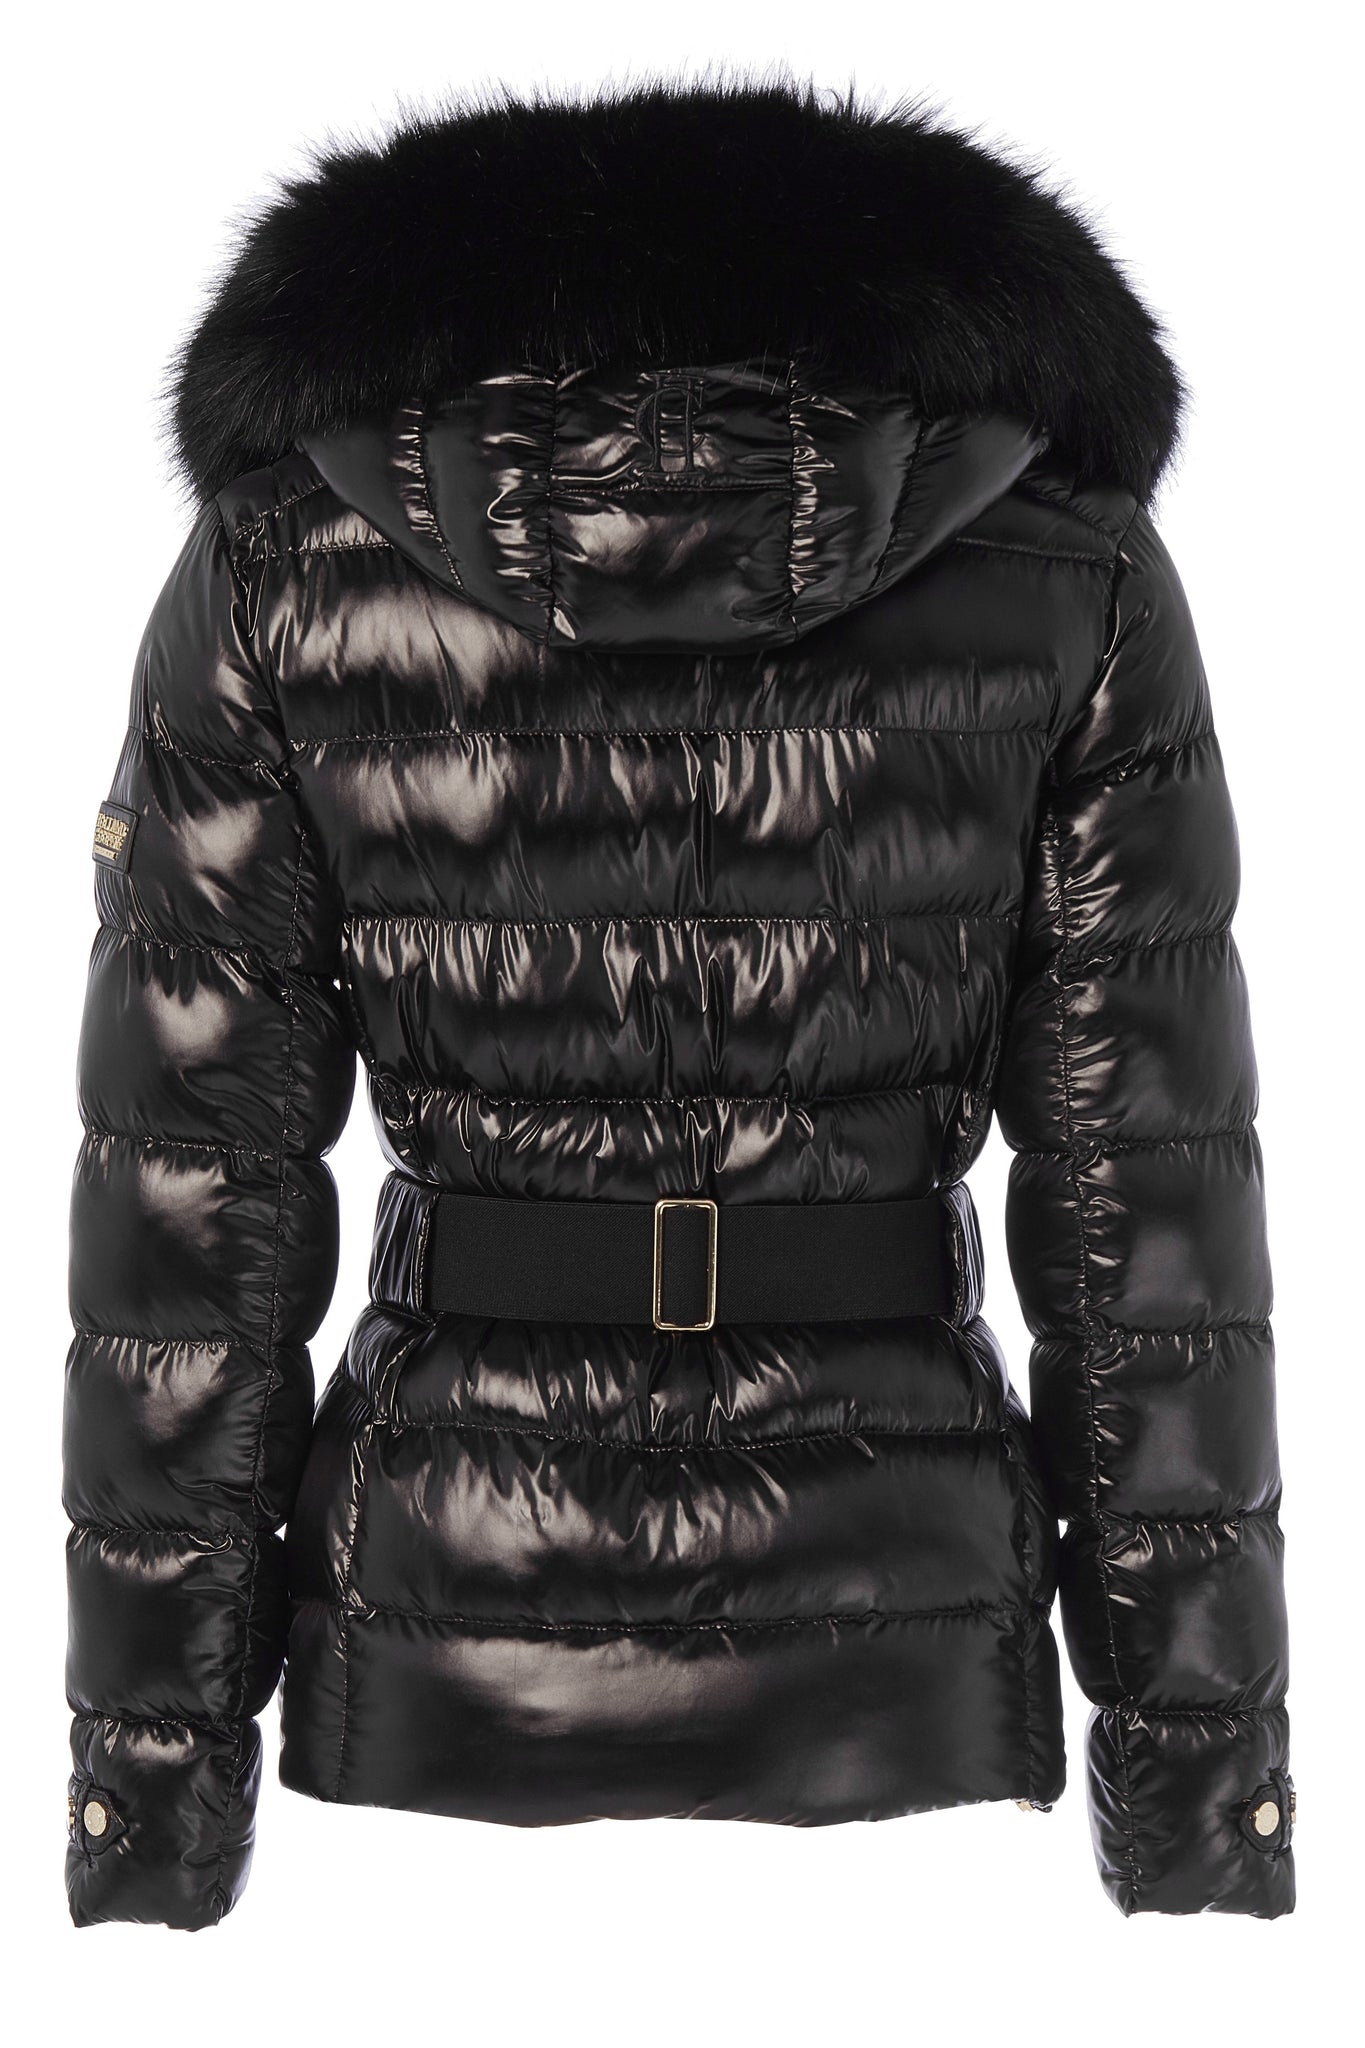 Aspen Jacket (Black)